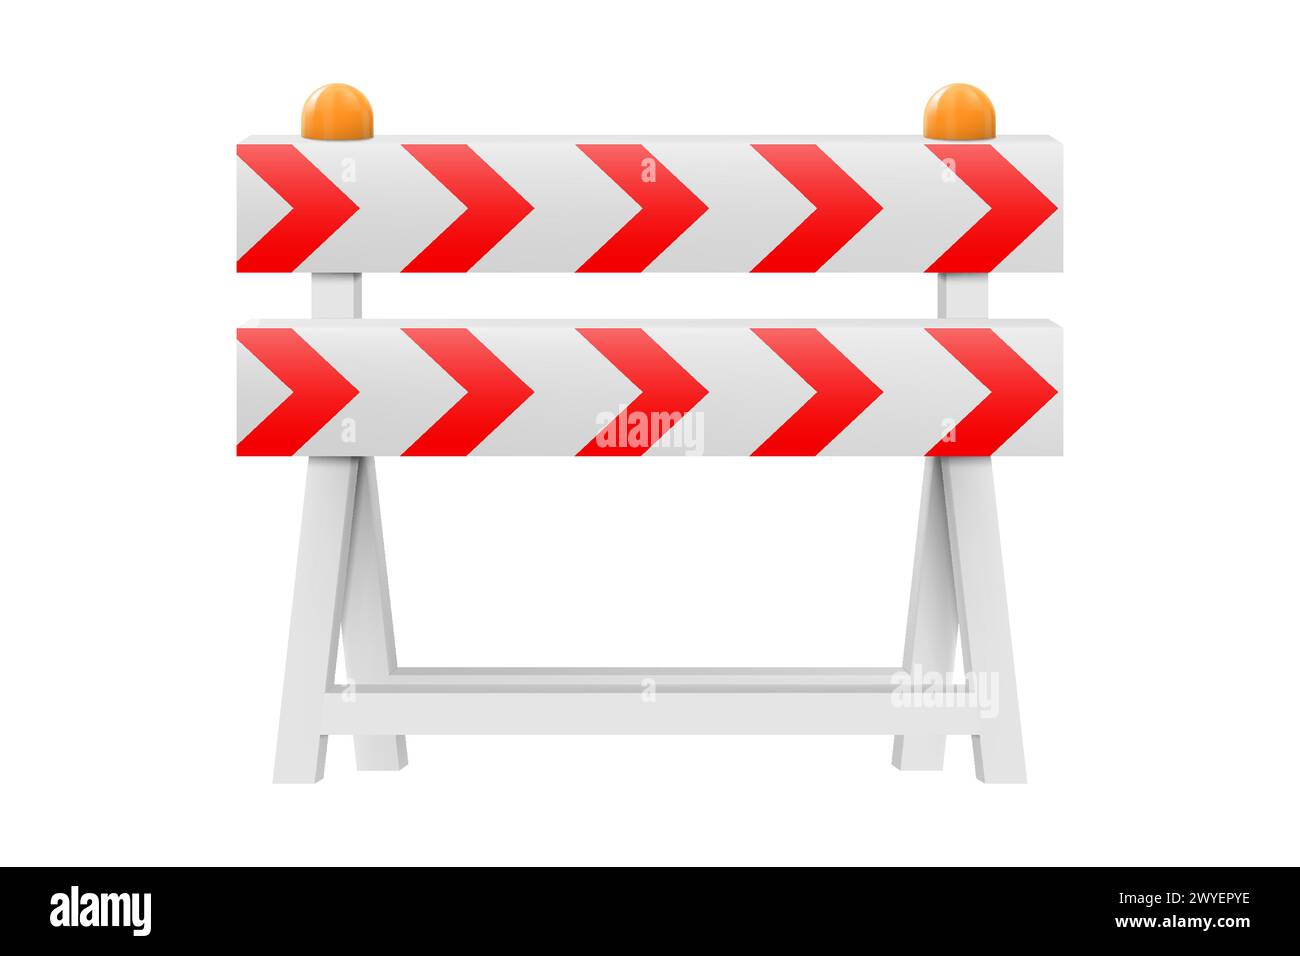 Barrière routière de protection avec bandes rouges. En construction, barrière d'avertissement. icône de vecteur réaliste 3d. style minimaliste. Illustration de Vecteur